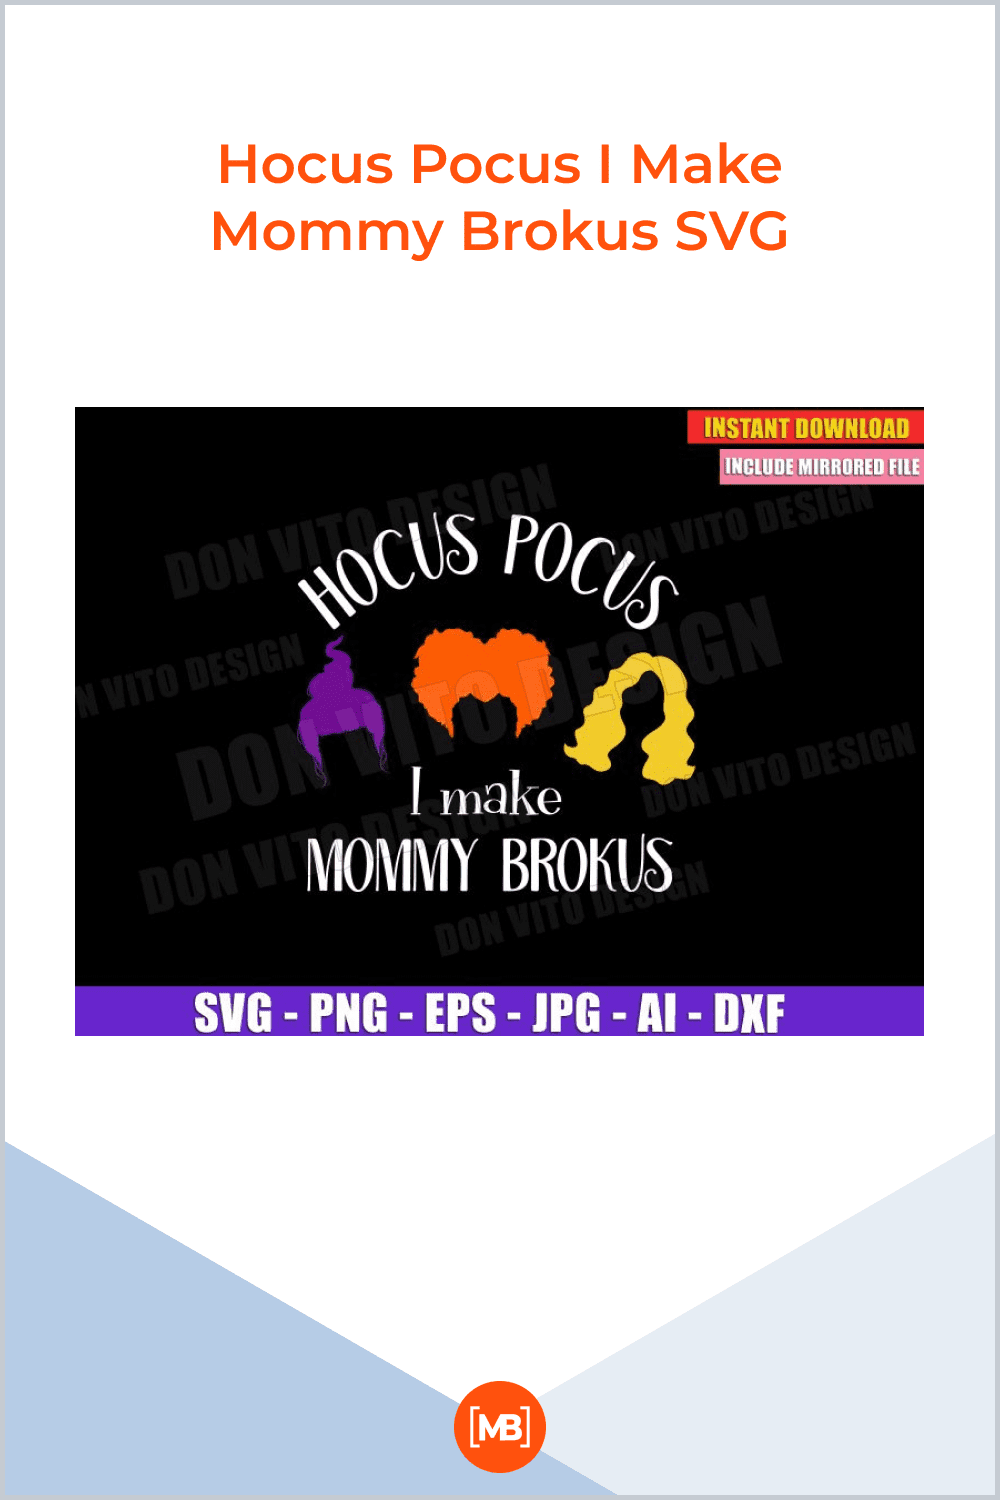 Hocus Pocus I Make Mommy Brokus SVG.